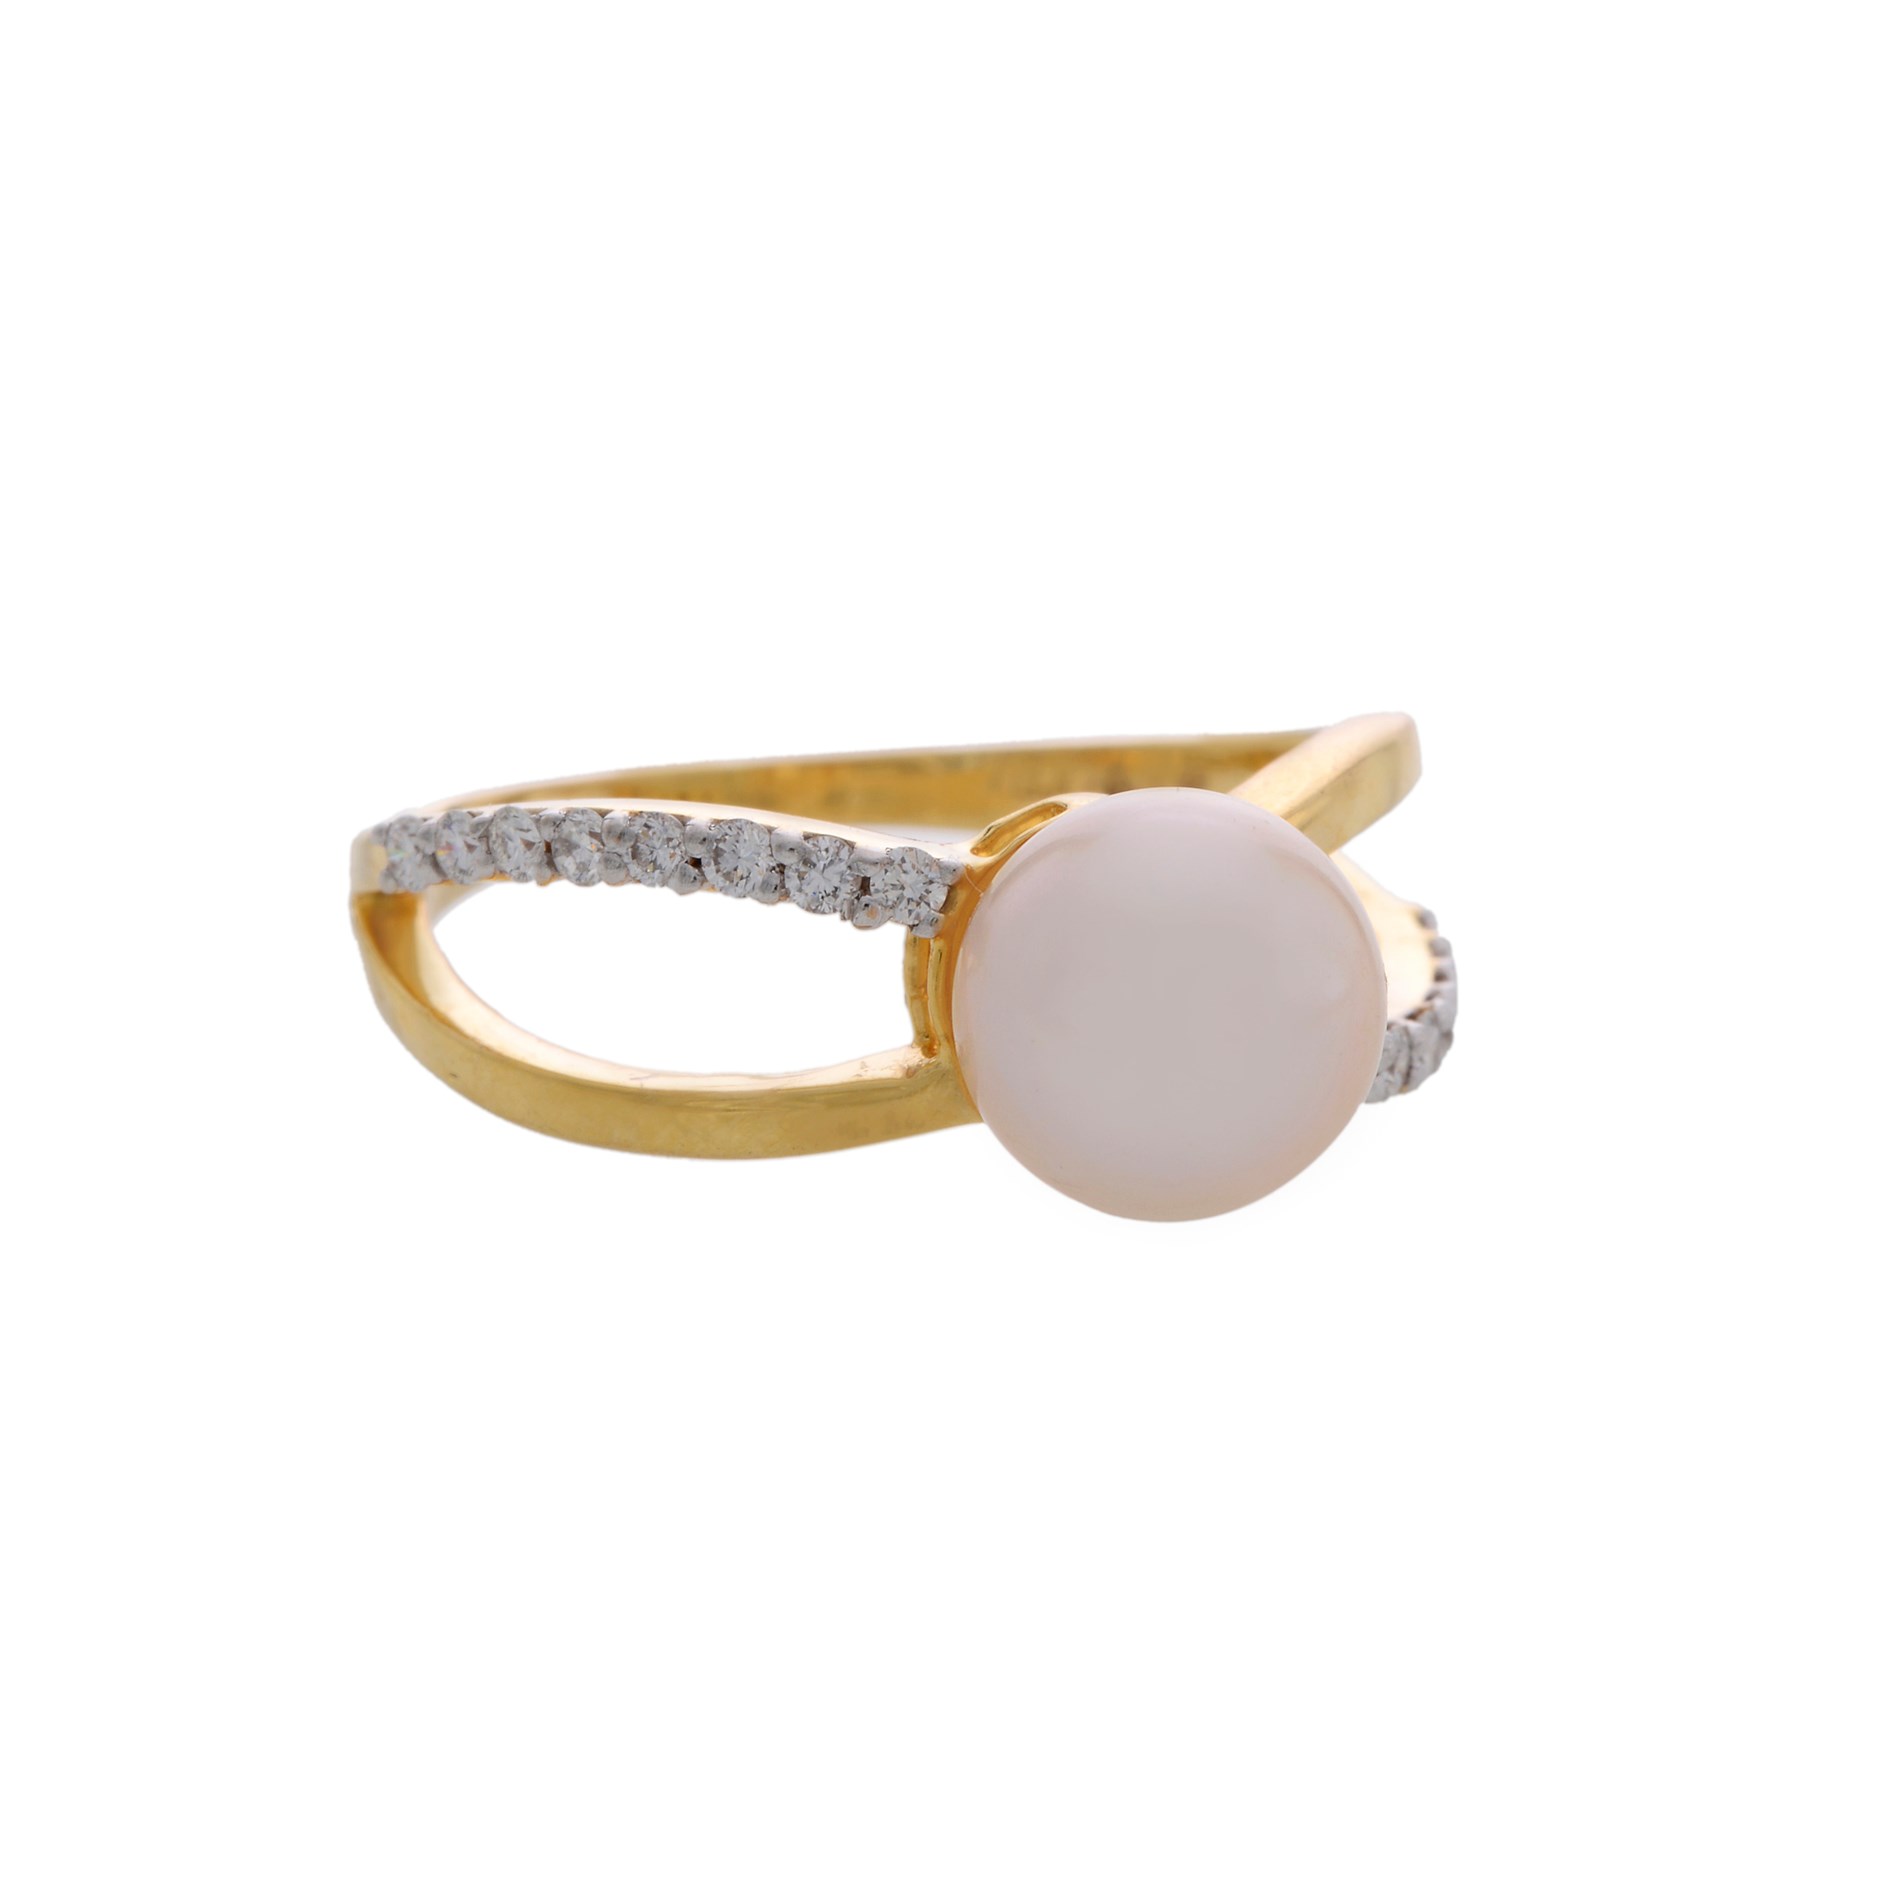 Buy Pearl & Diamonds Gold Finger Ring online